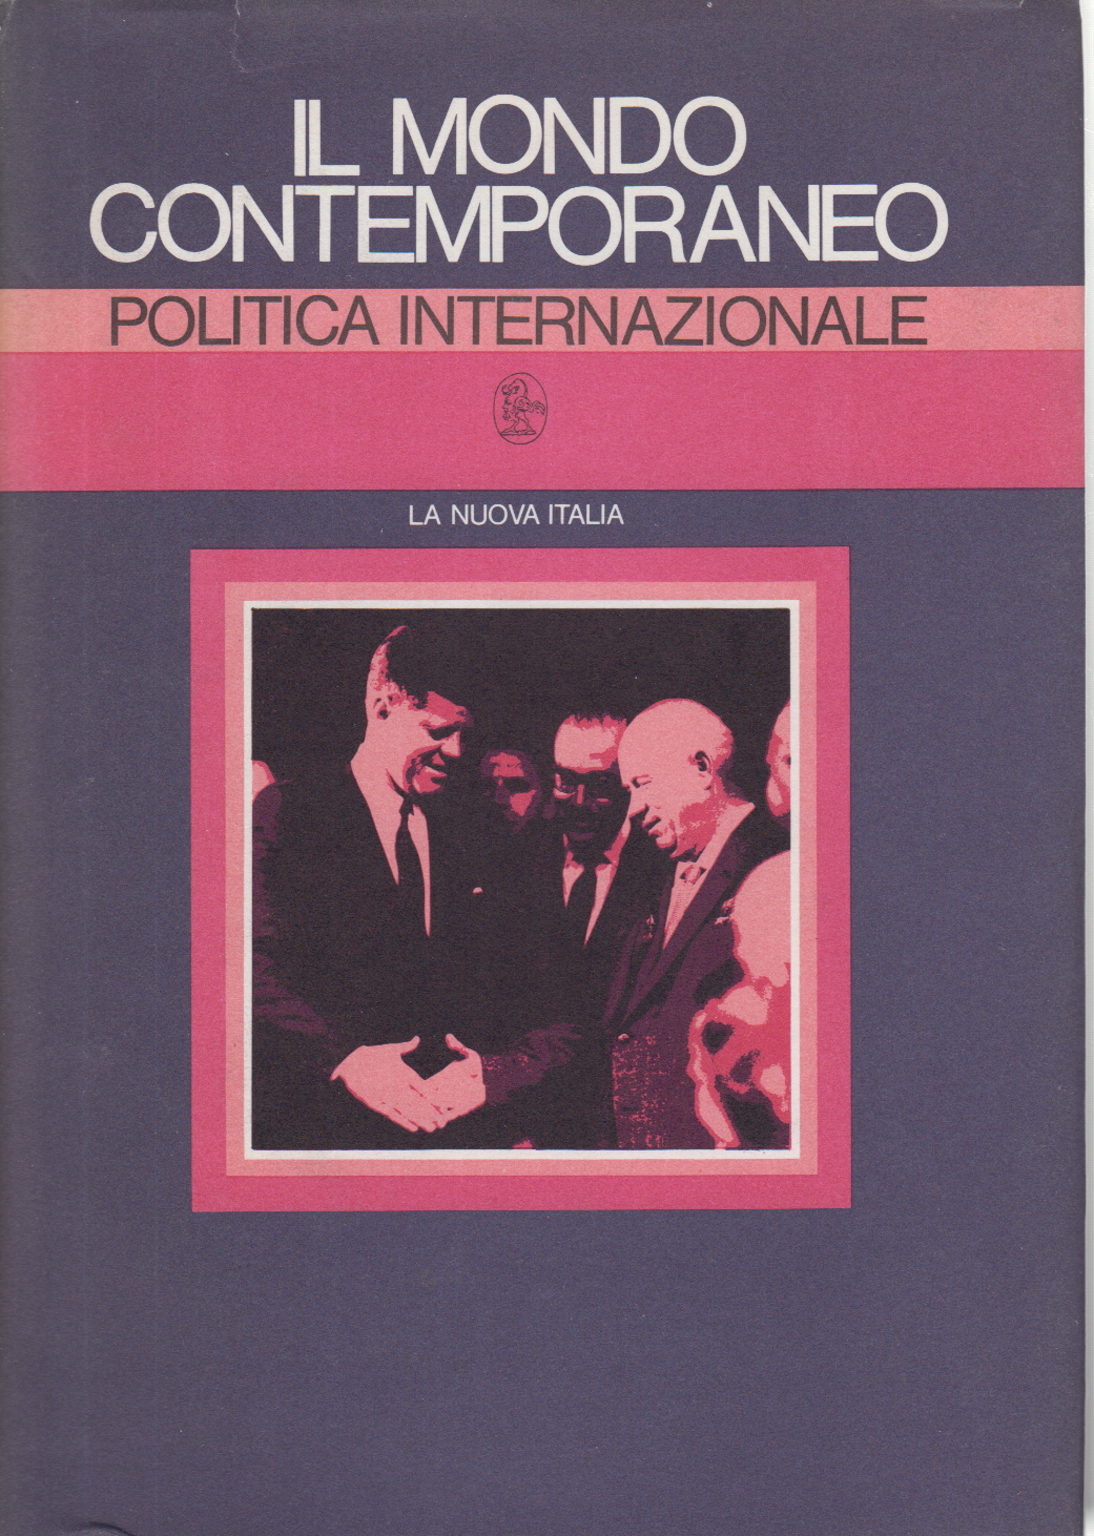 La politique internationale, Luigi Bonanate